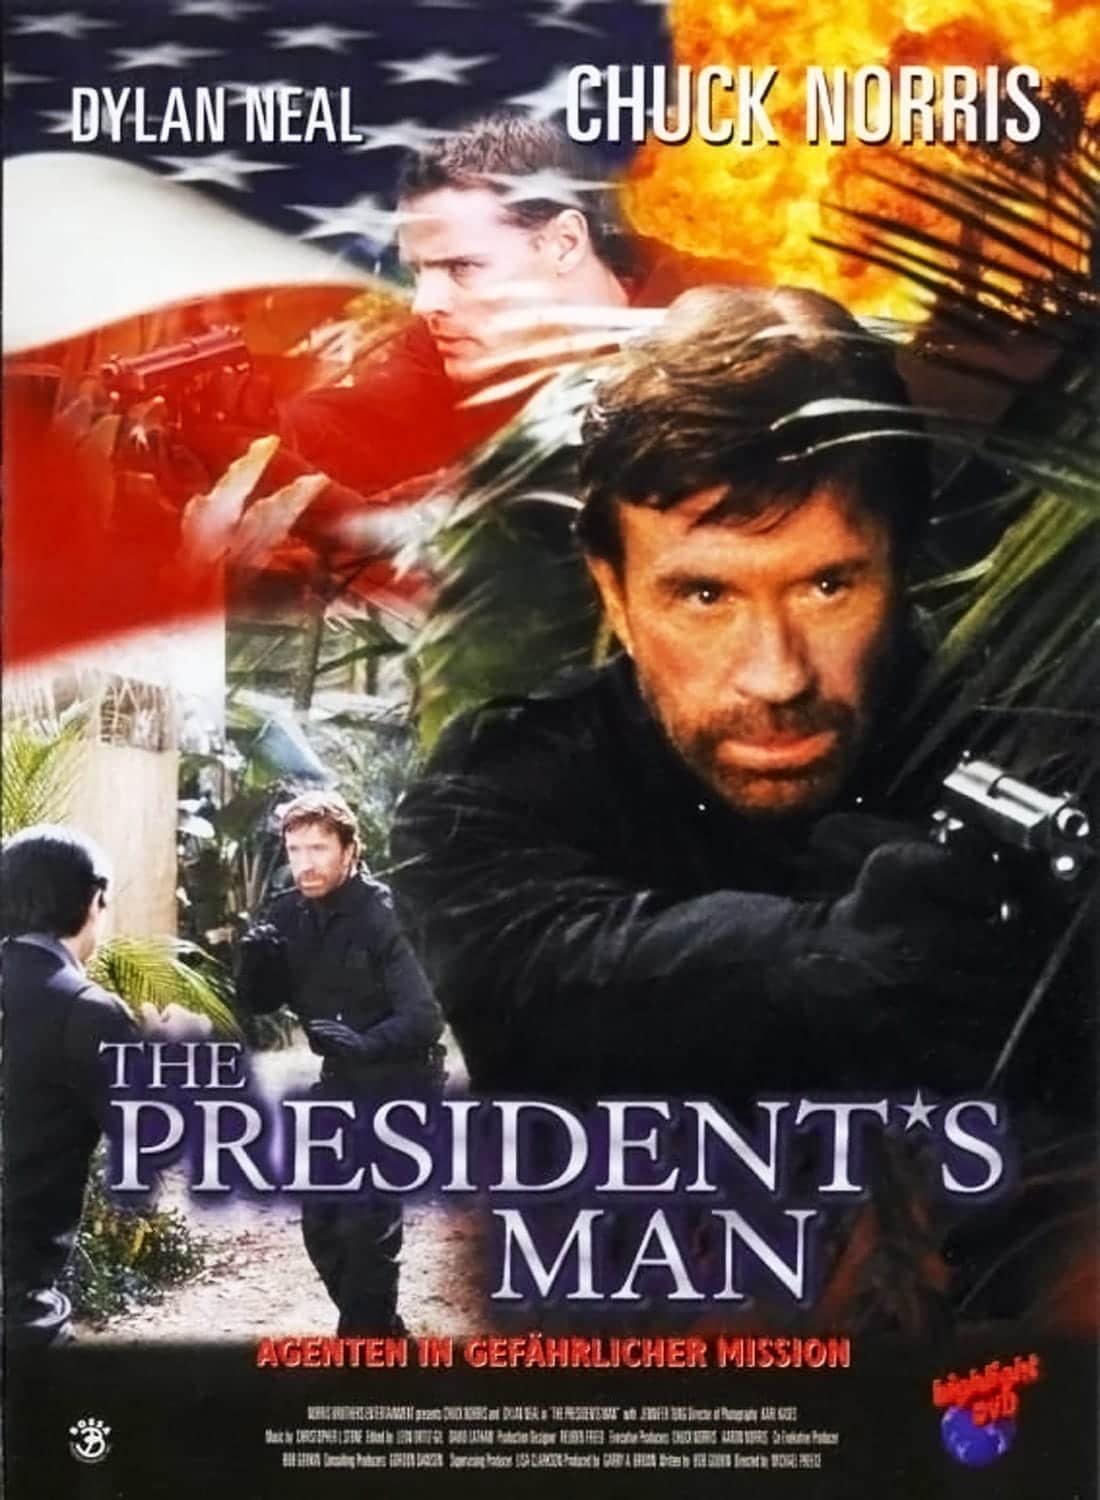 Plakat von "The President's Man"